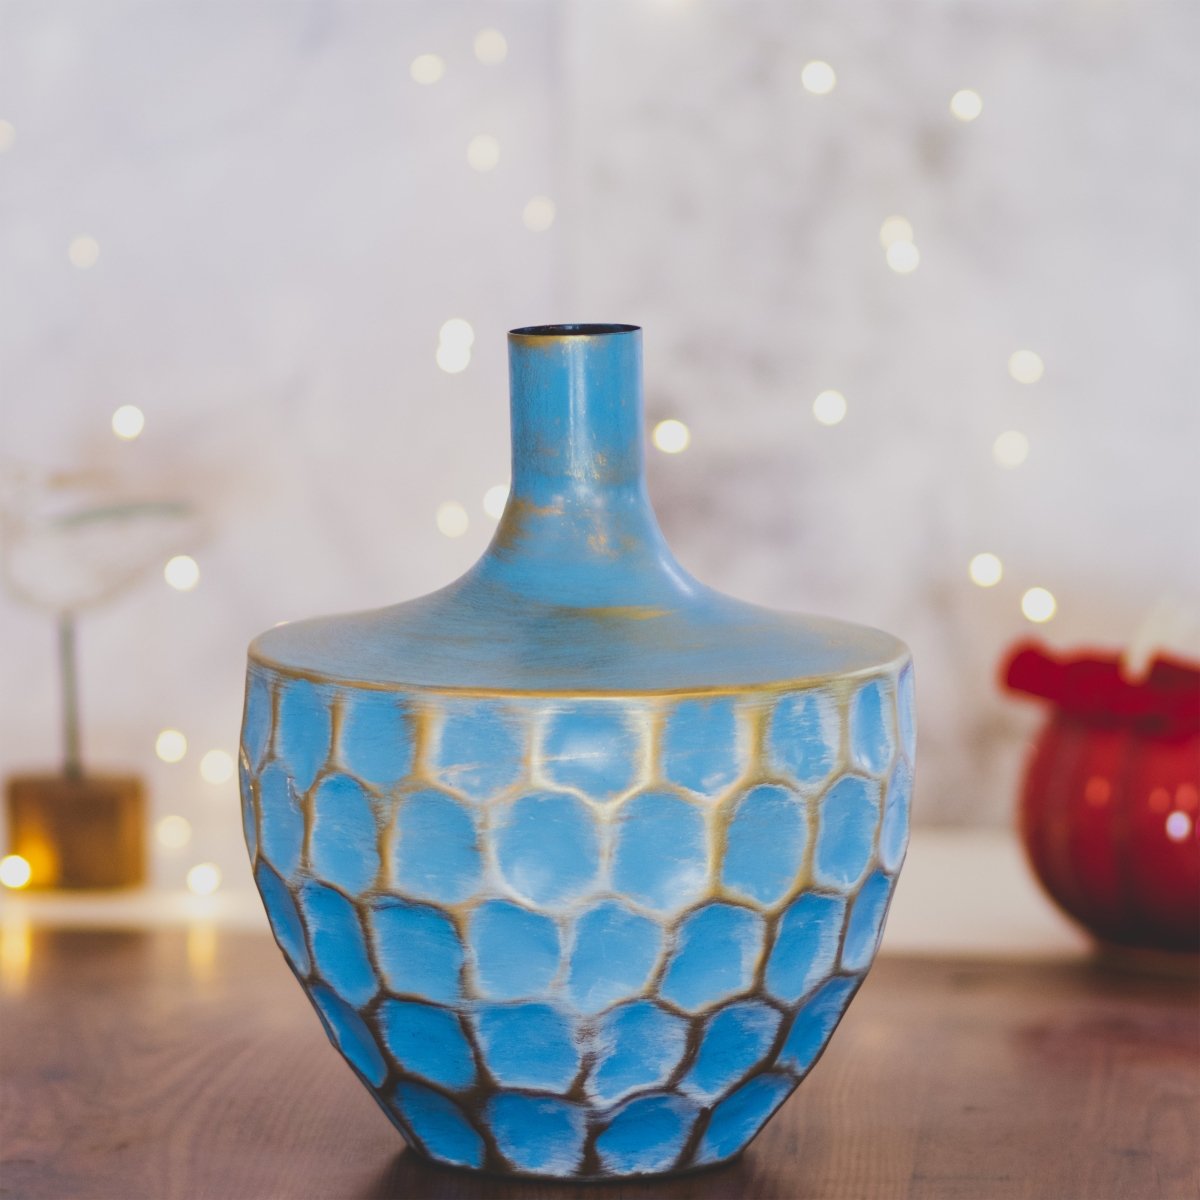 Kezevel Metal Decorative Vase - Golden Blue Honeycomb Pattern Handcrafted Metal Flower Vases for Home Decor, Metal Planter